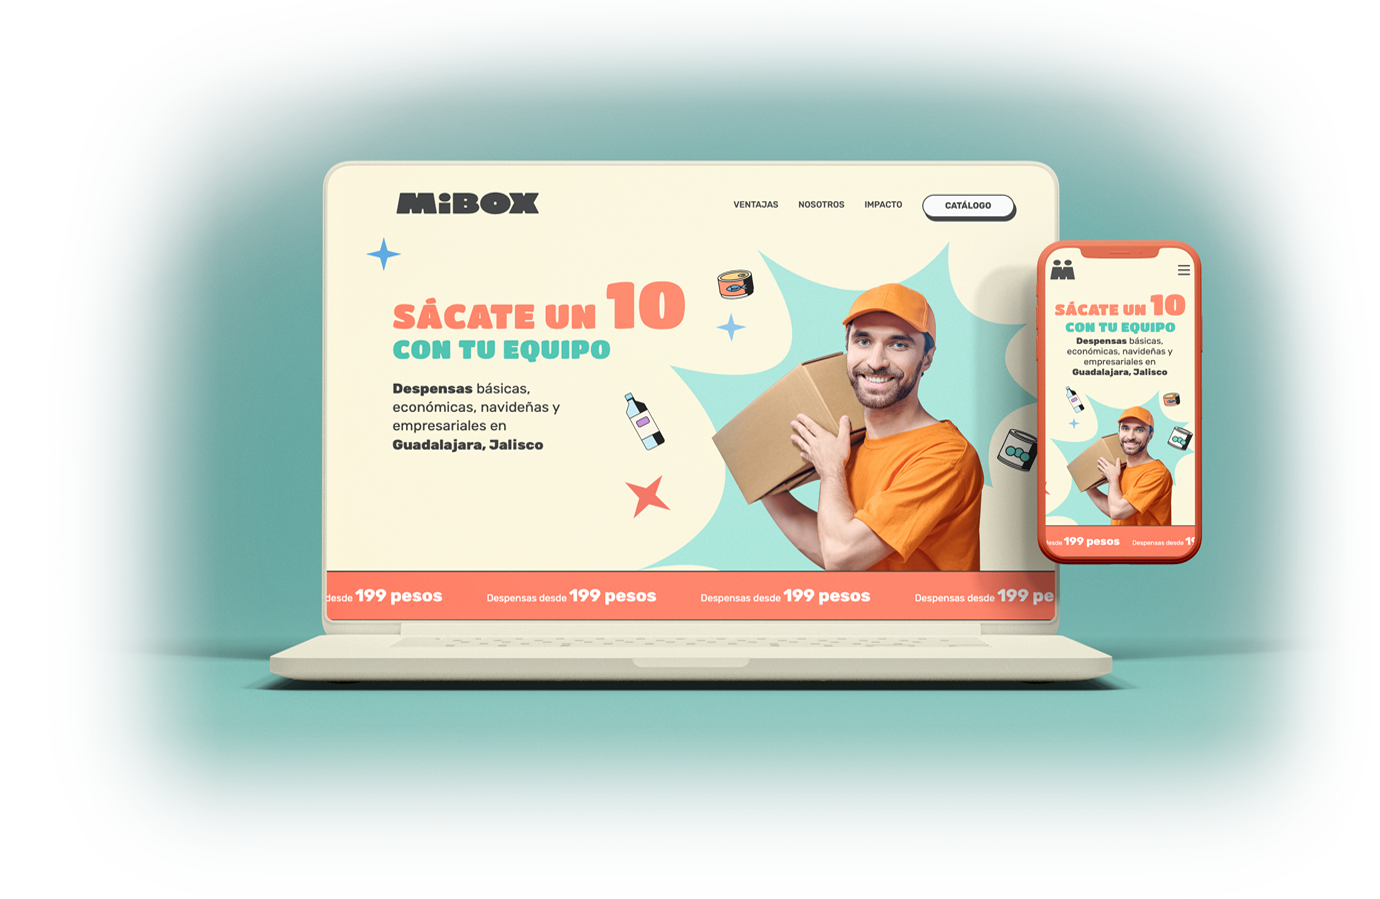 Creamos la nueva versión del sitio de Mibox.mx para adaptarlo a la nueva etapa de la empresa.